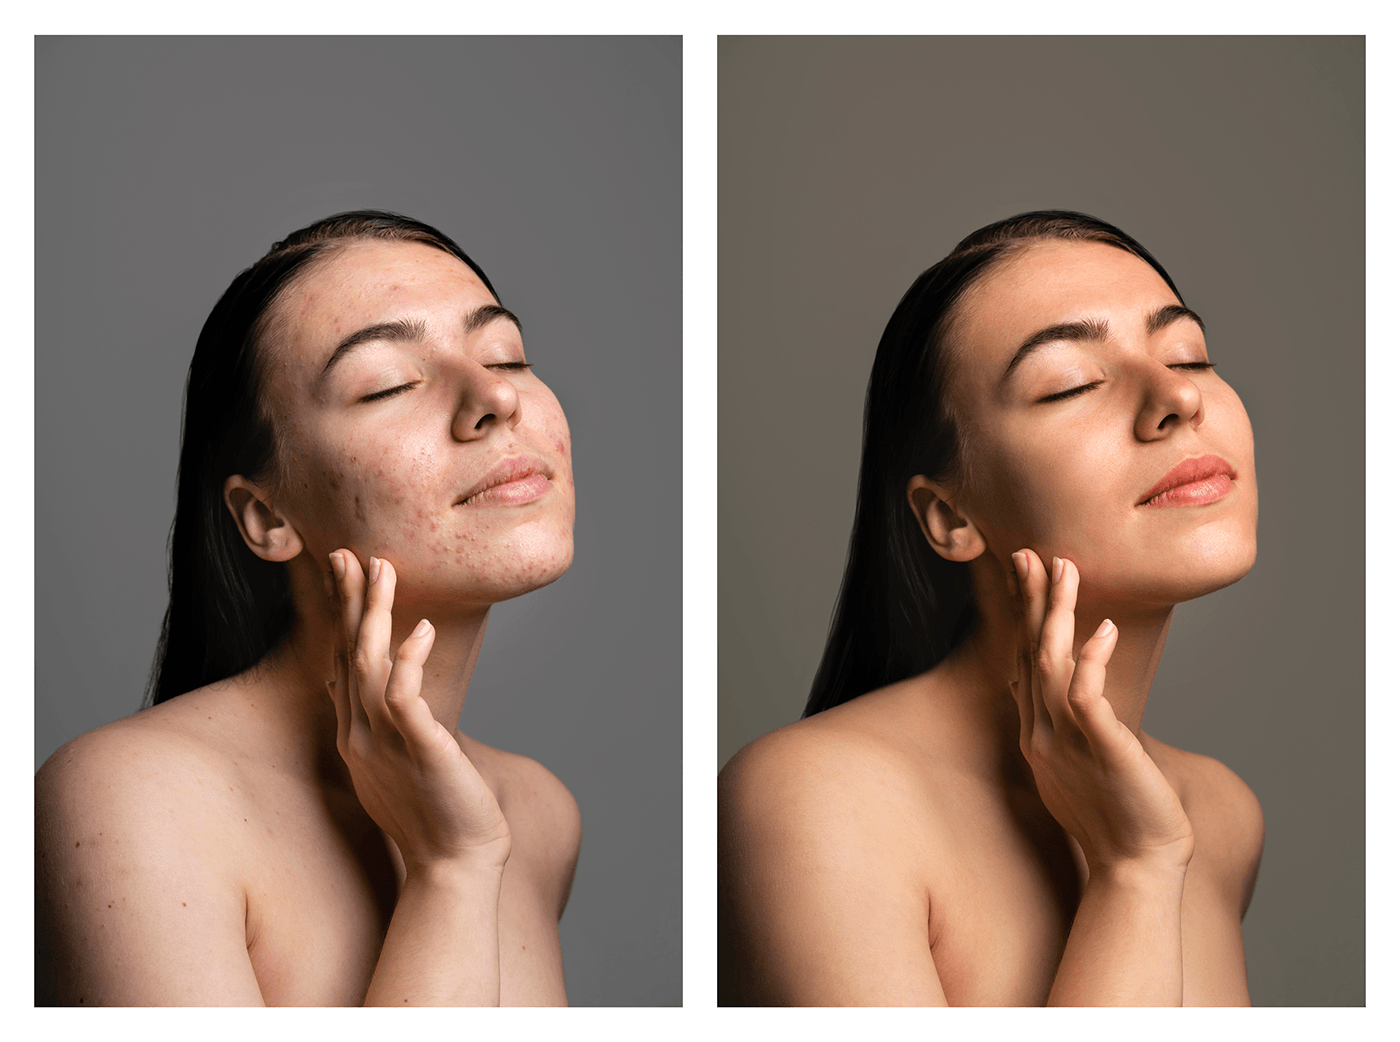 retouching  photo editing Adobe Photoshop video retouch beauty woman Skin retouching